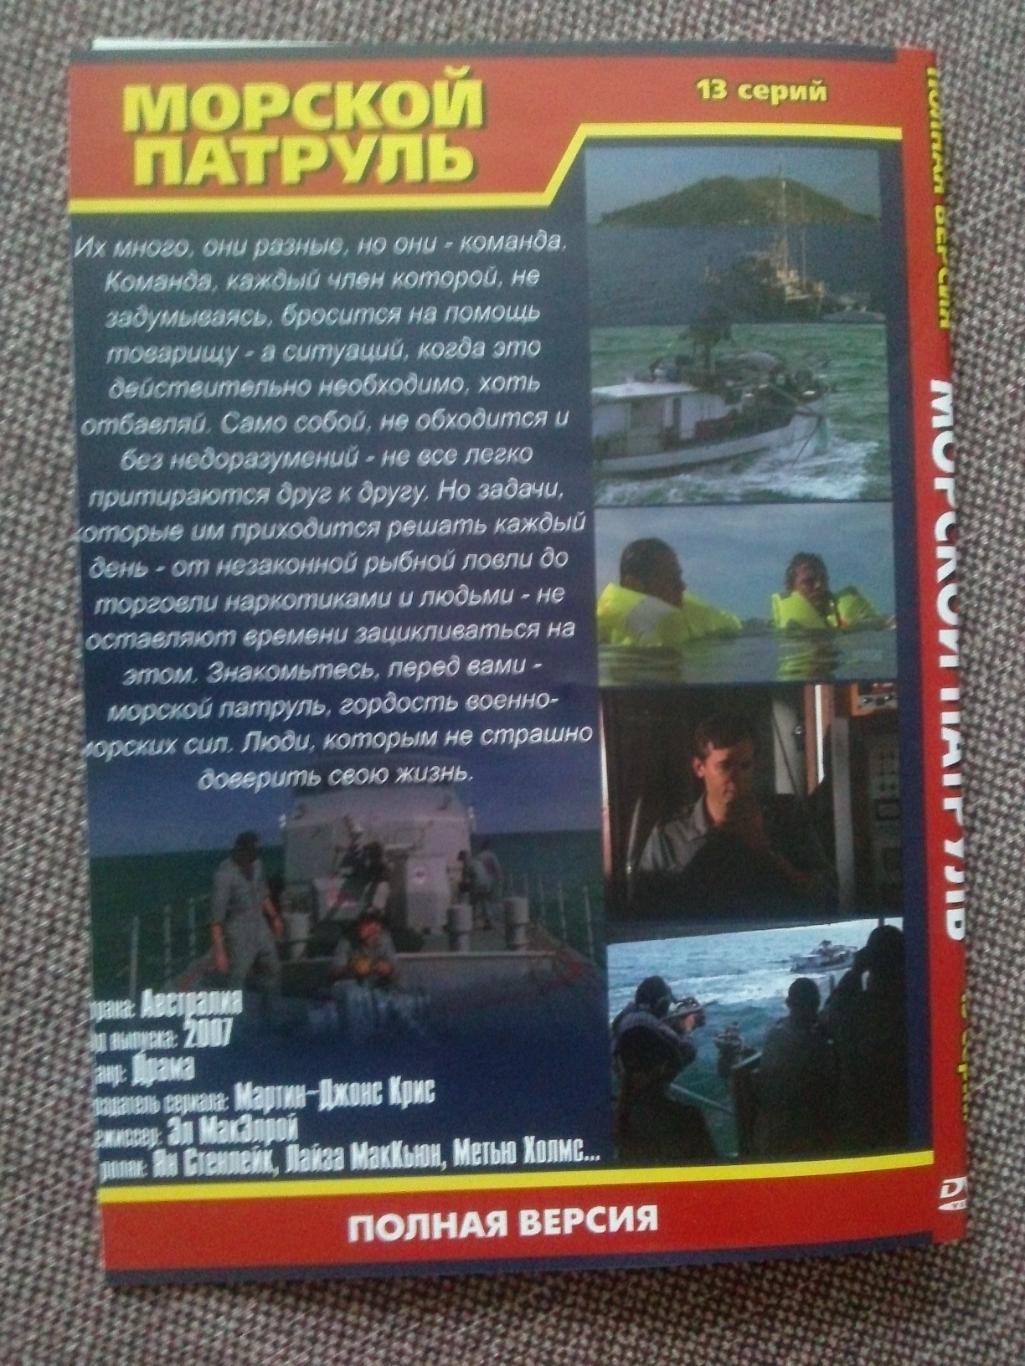 DVD диск : Морской патруль (13 серий) 2007 г. Австралия (полная серия) 1